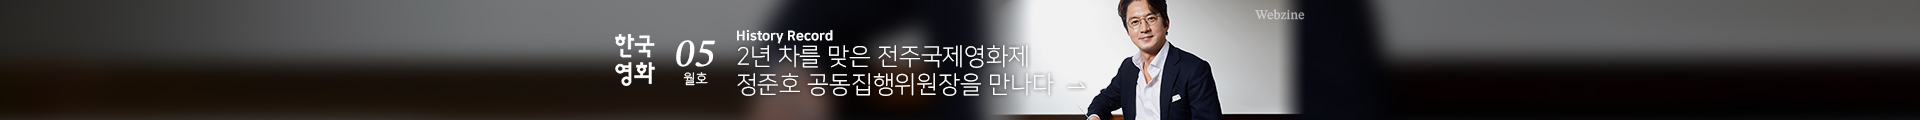 한국영화 웹진